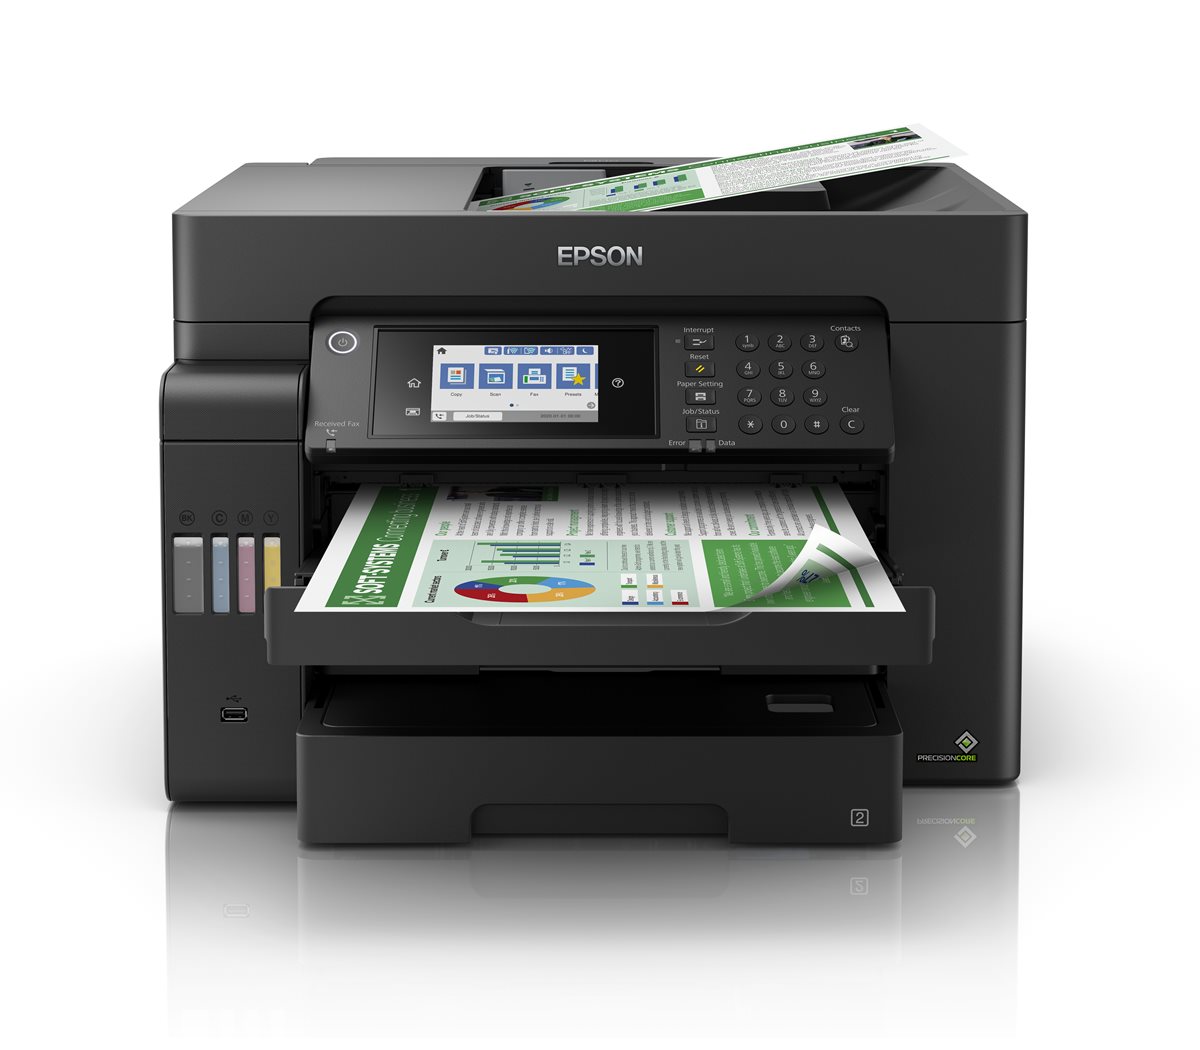 Impresora HP con sistema de tinta continua inalámbrica Cuenca